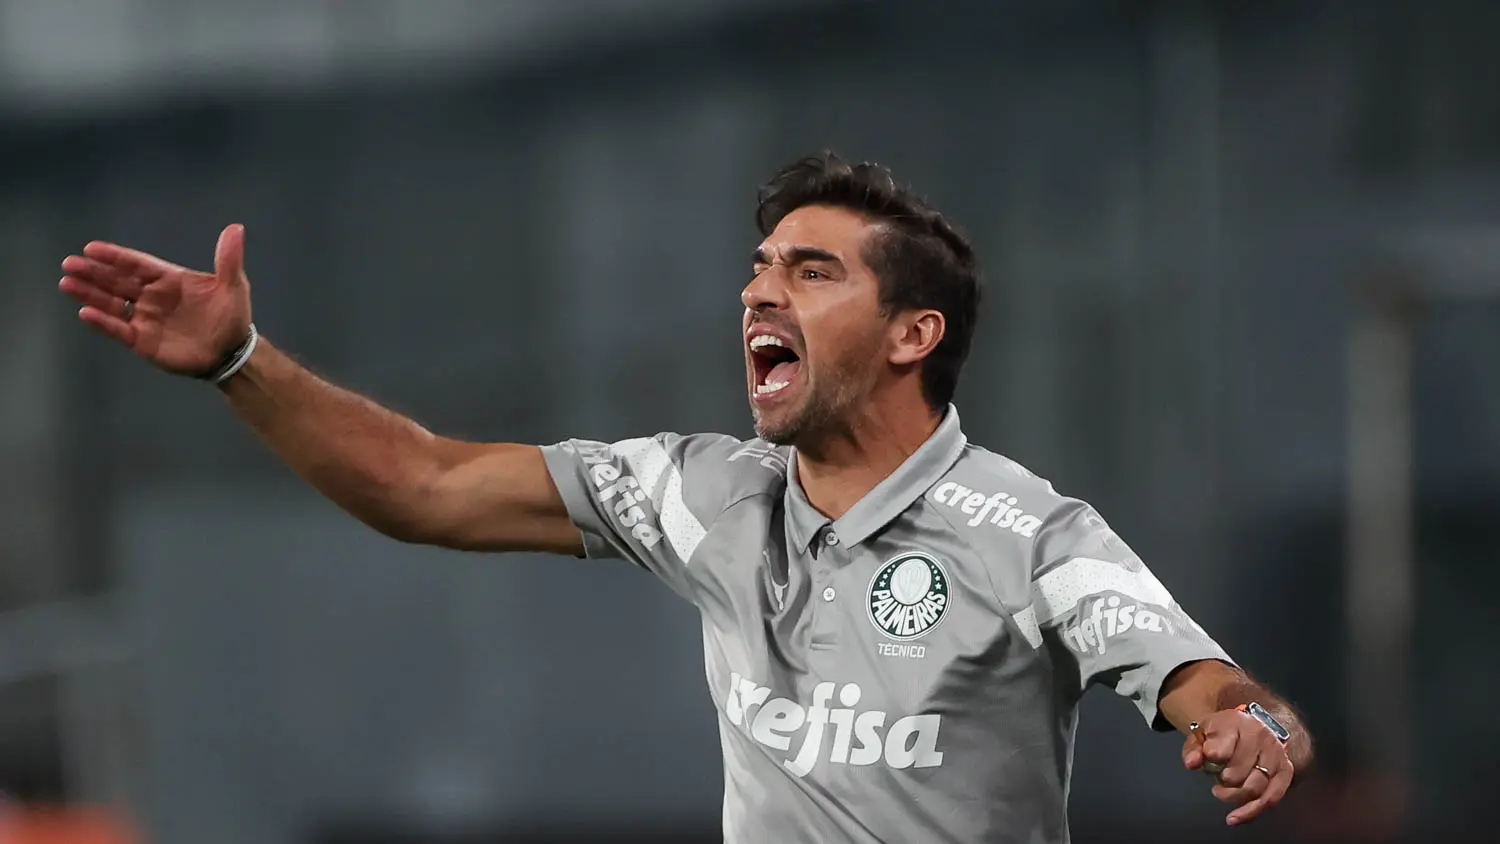 Palmeiras: Betano dá aposta grátis de R$25 em jogo contra o São